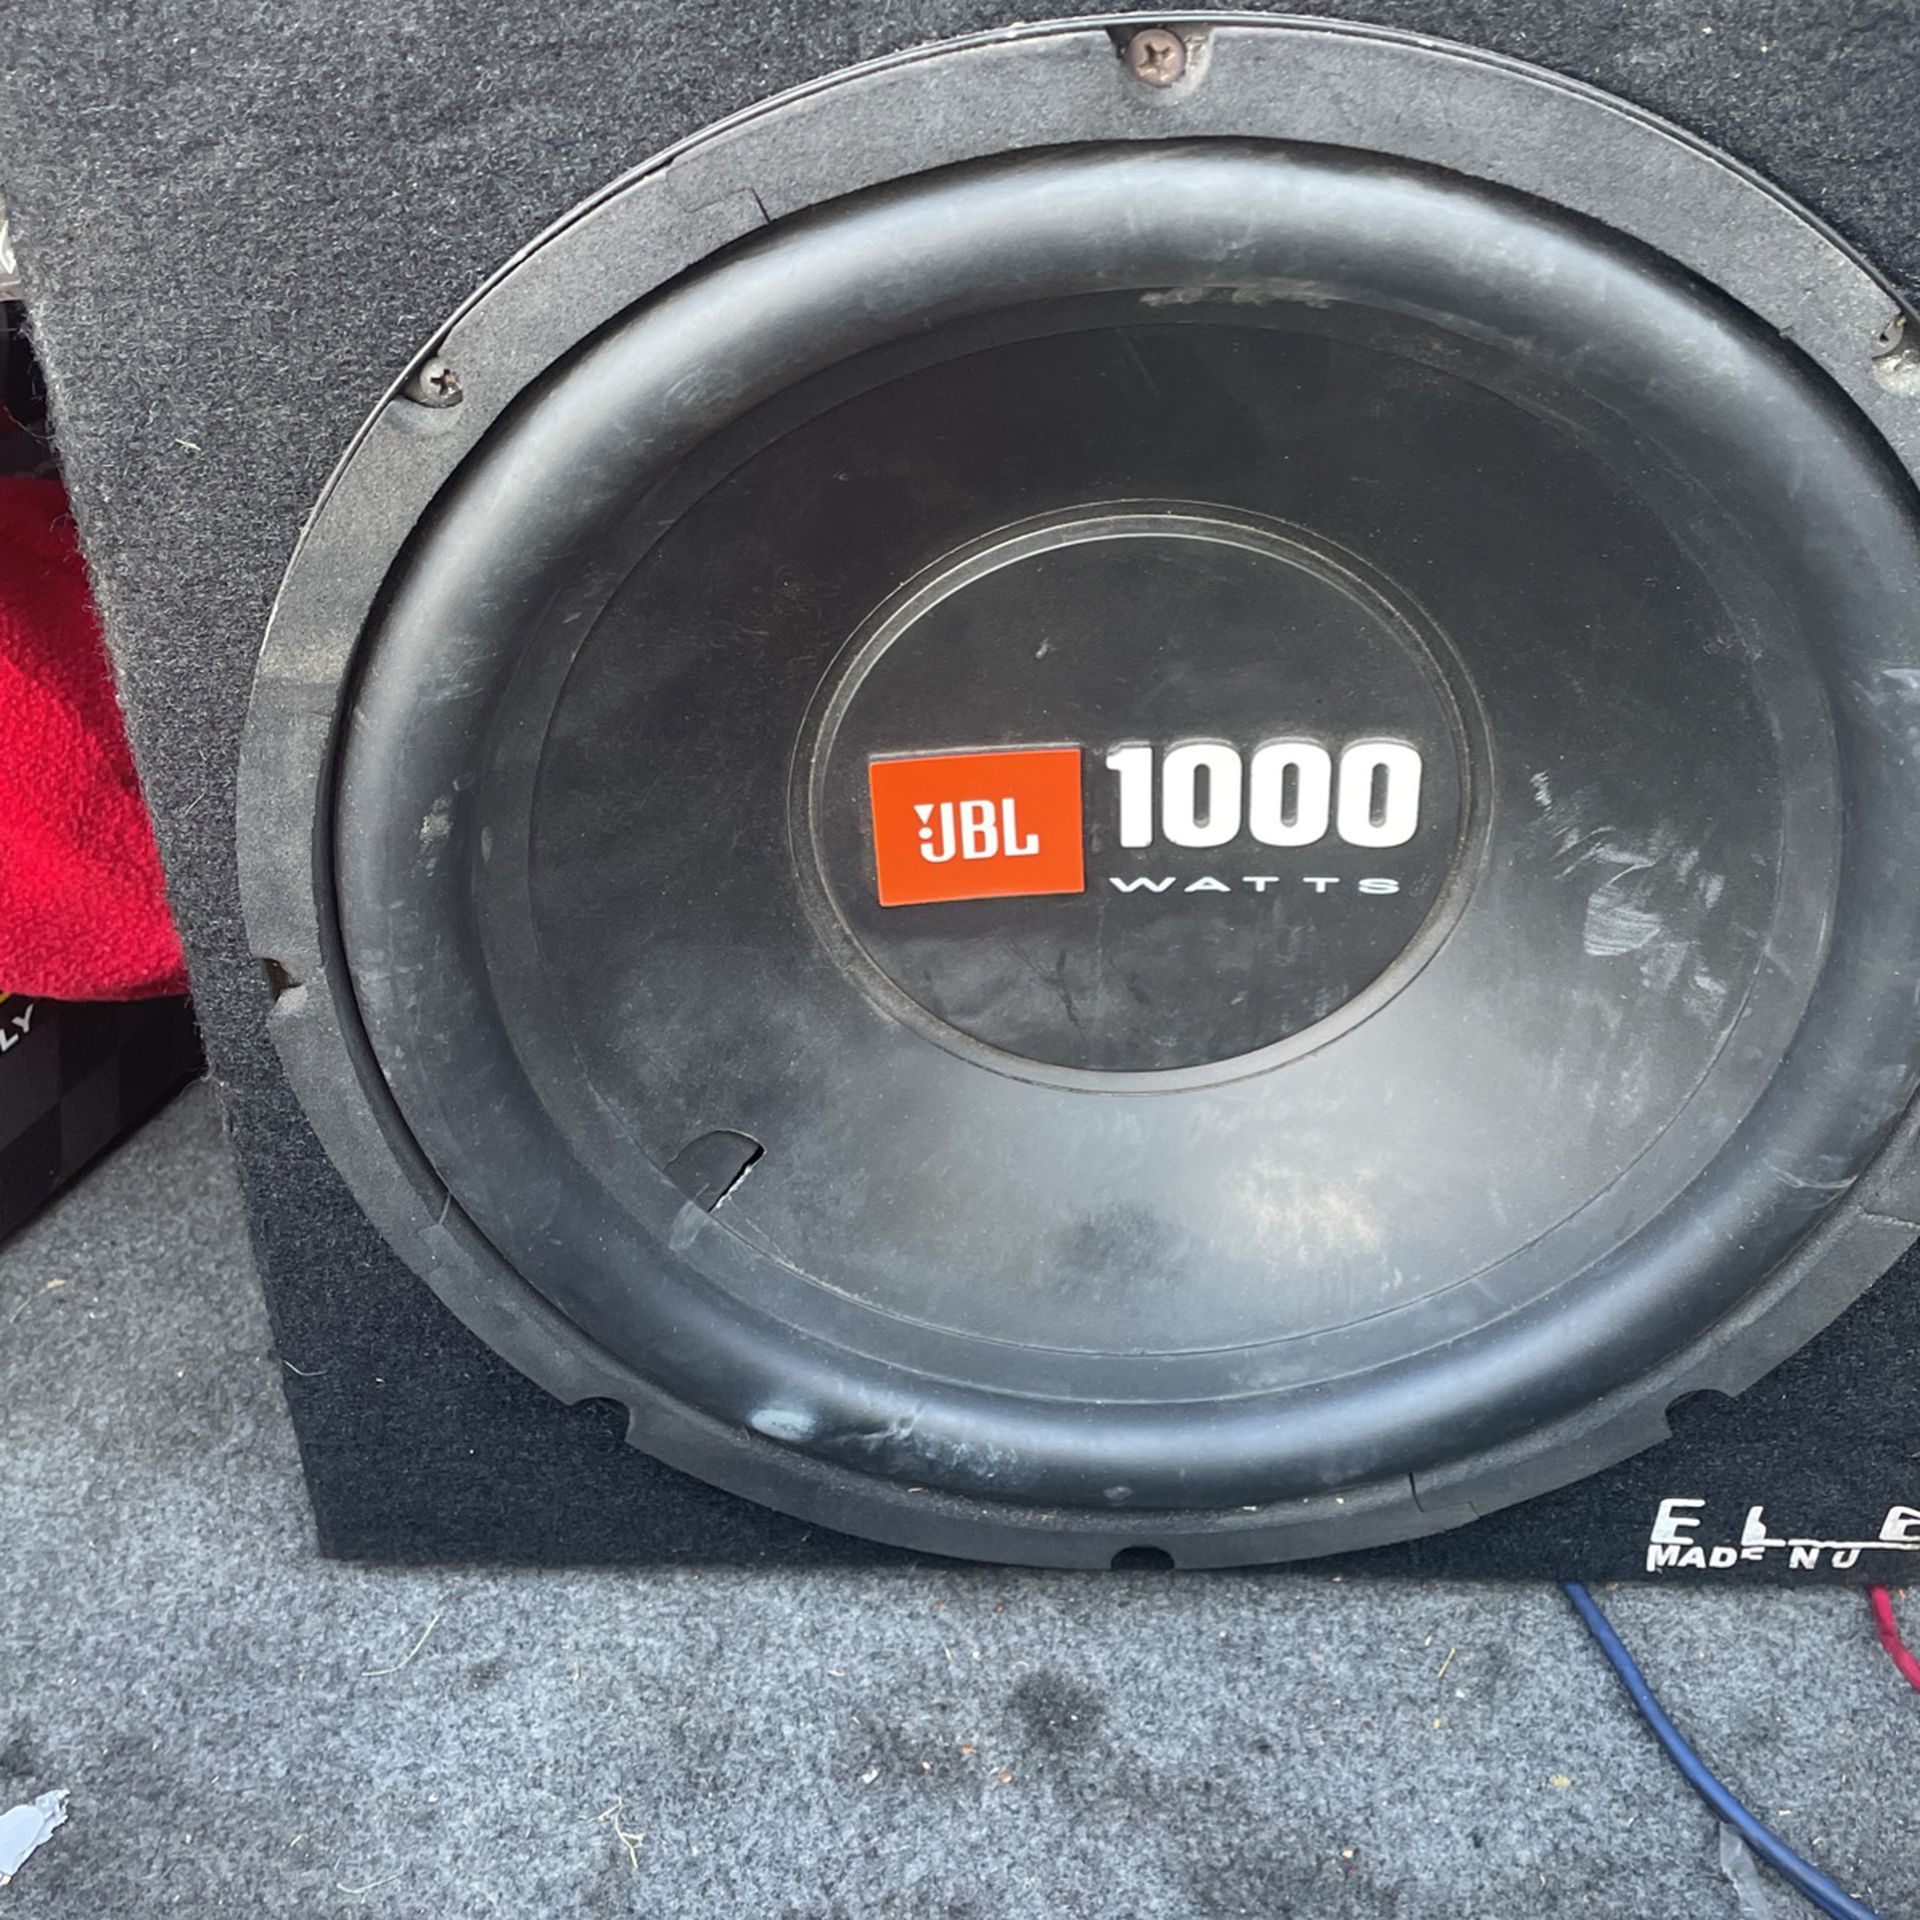 JBL 1000 Watts Subwoofer & Kicker Kx 250.2 amp for Sale in